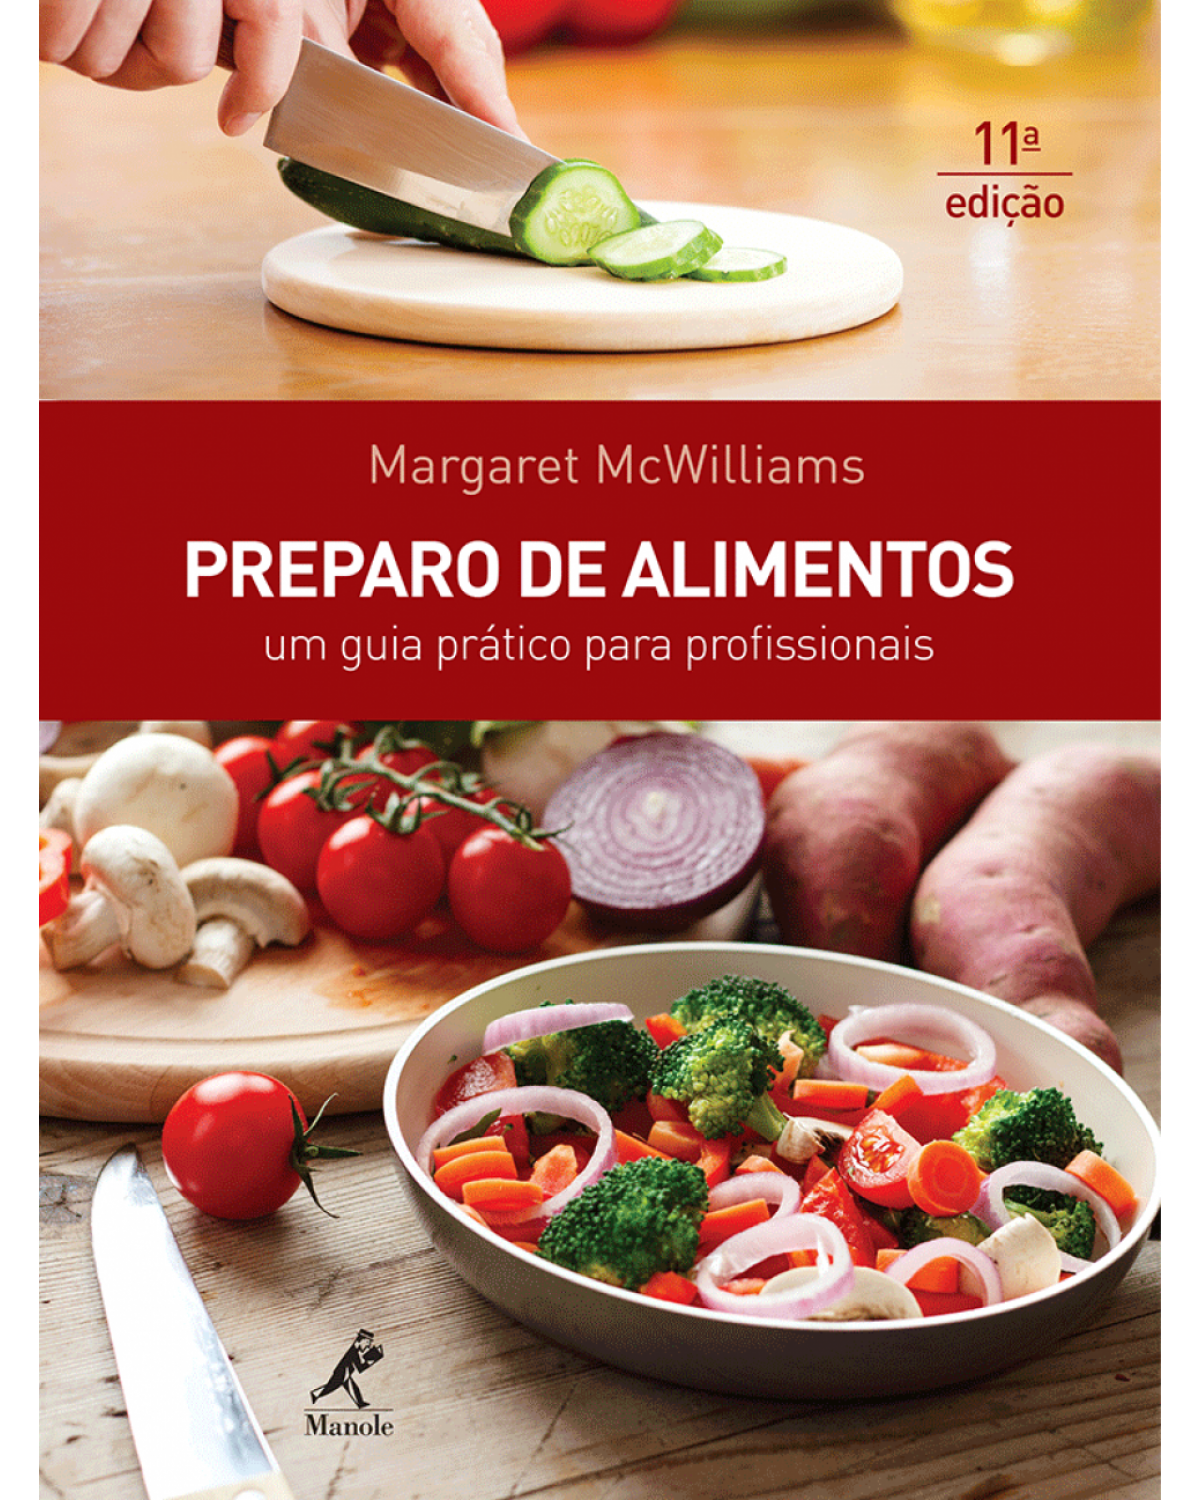 Preparo de alimentos - Um guia prático - 11ª Edição | 2014